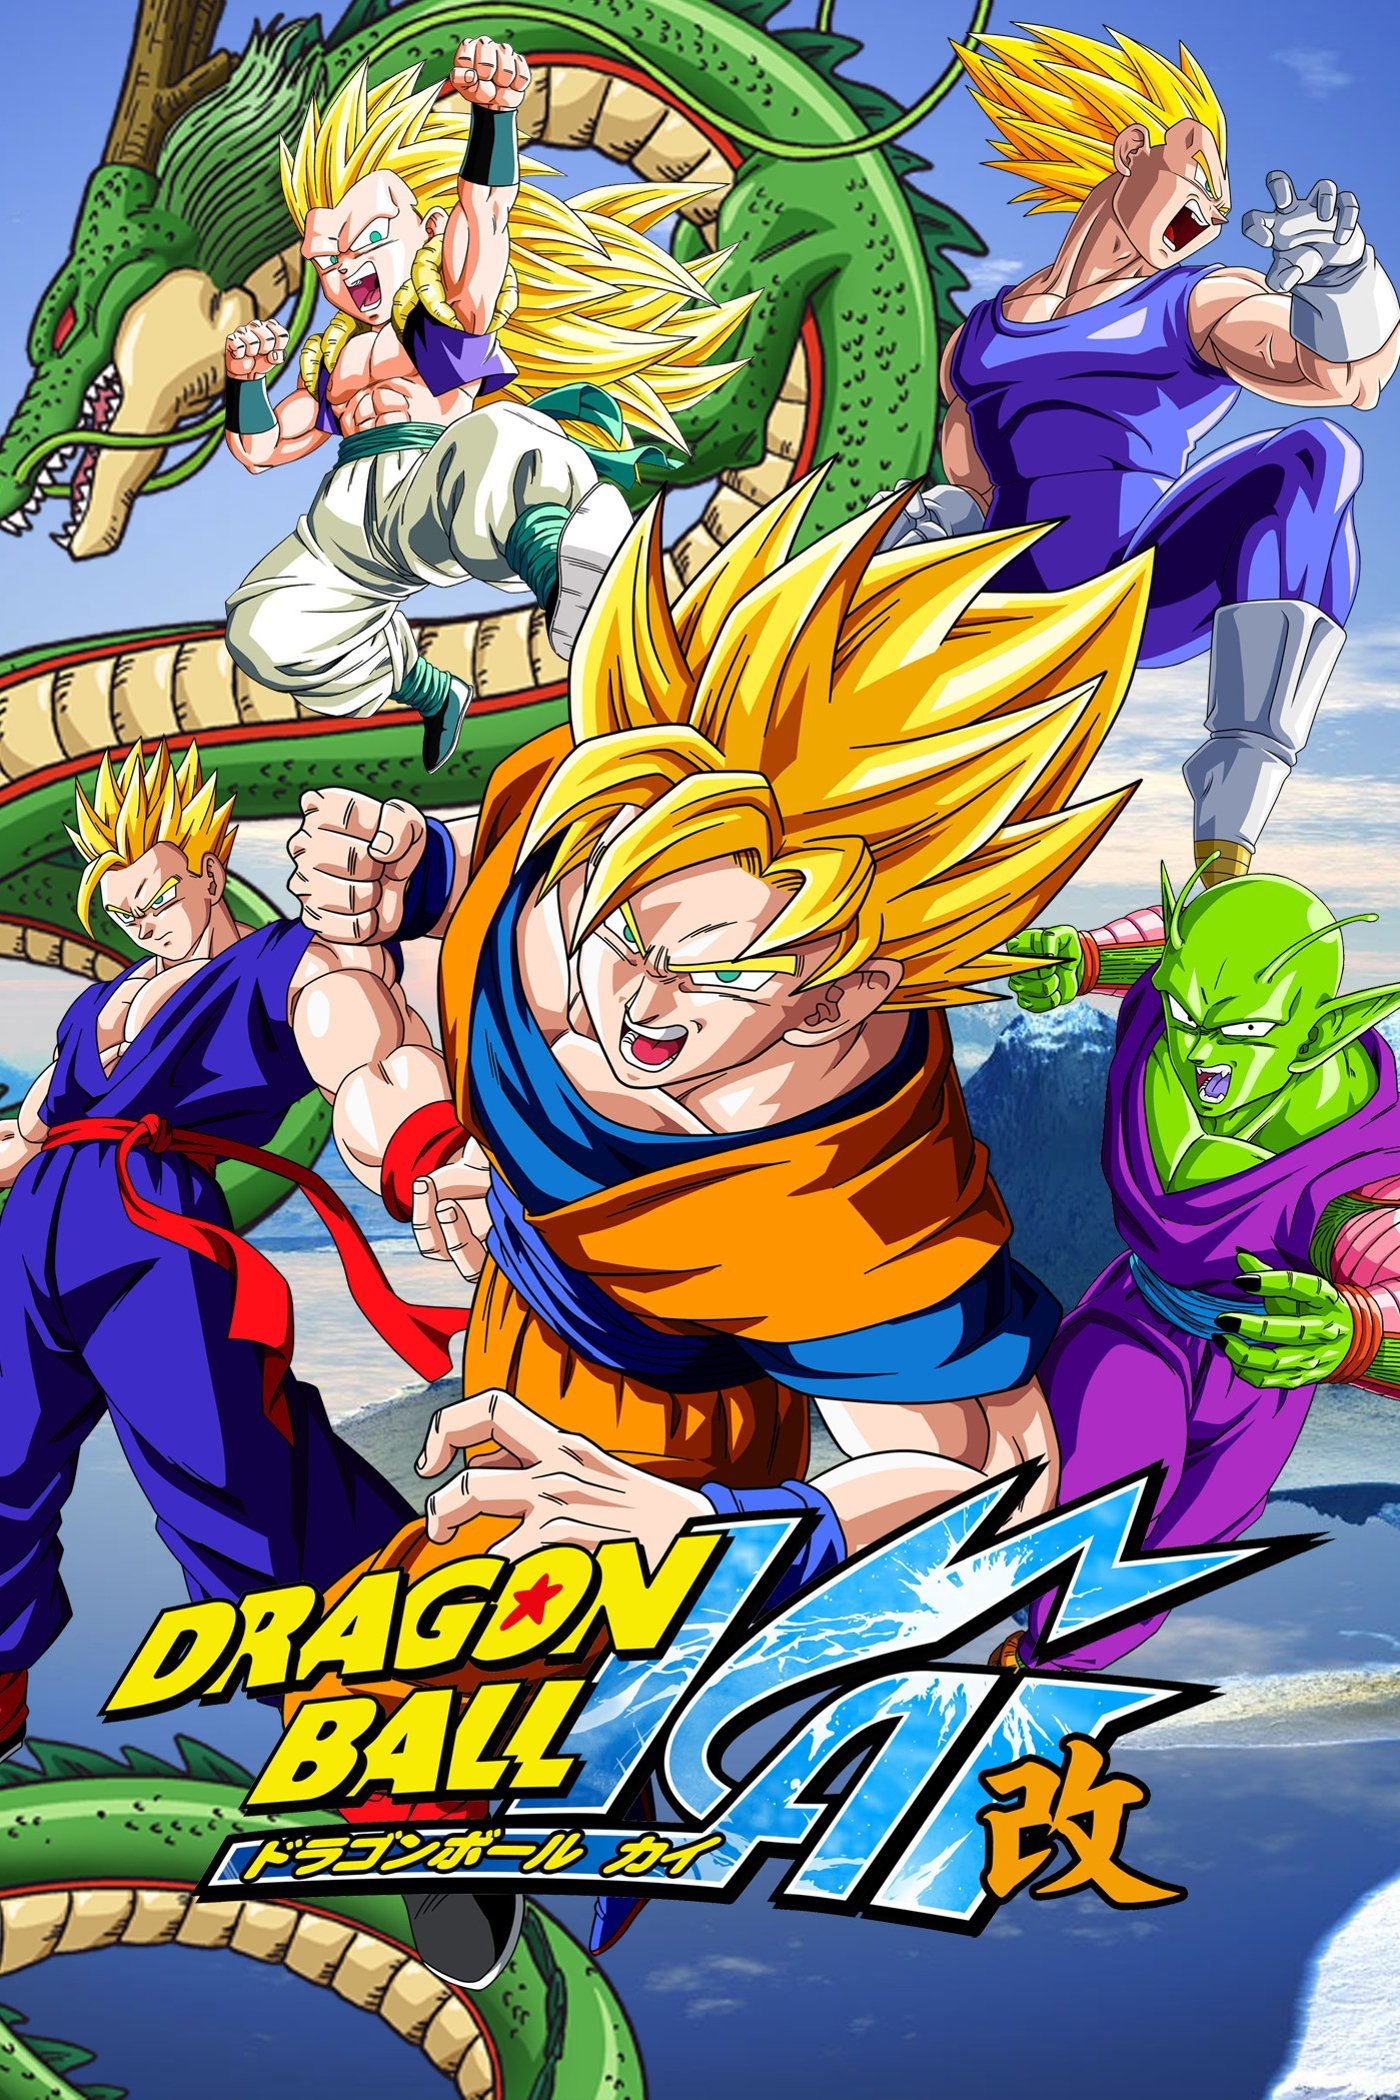 Anime Dragon Ball Z Kai Dragon Ball TV Show Poster. 